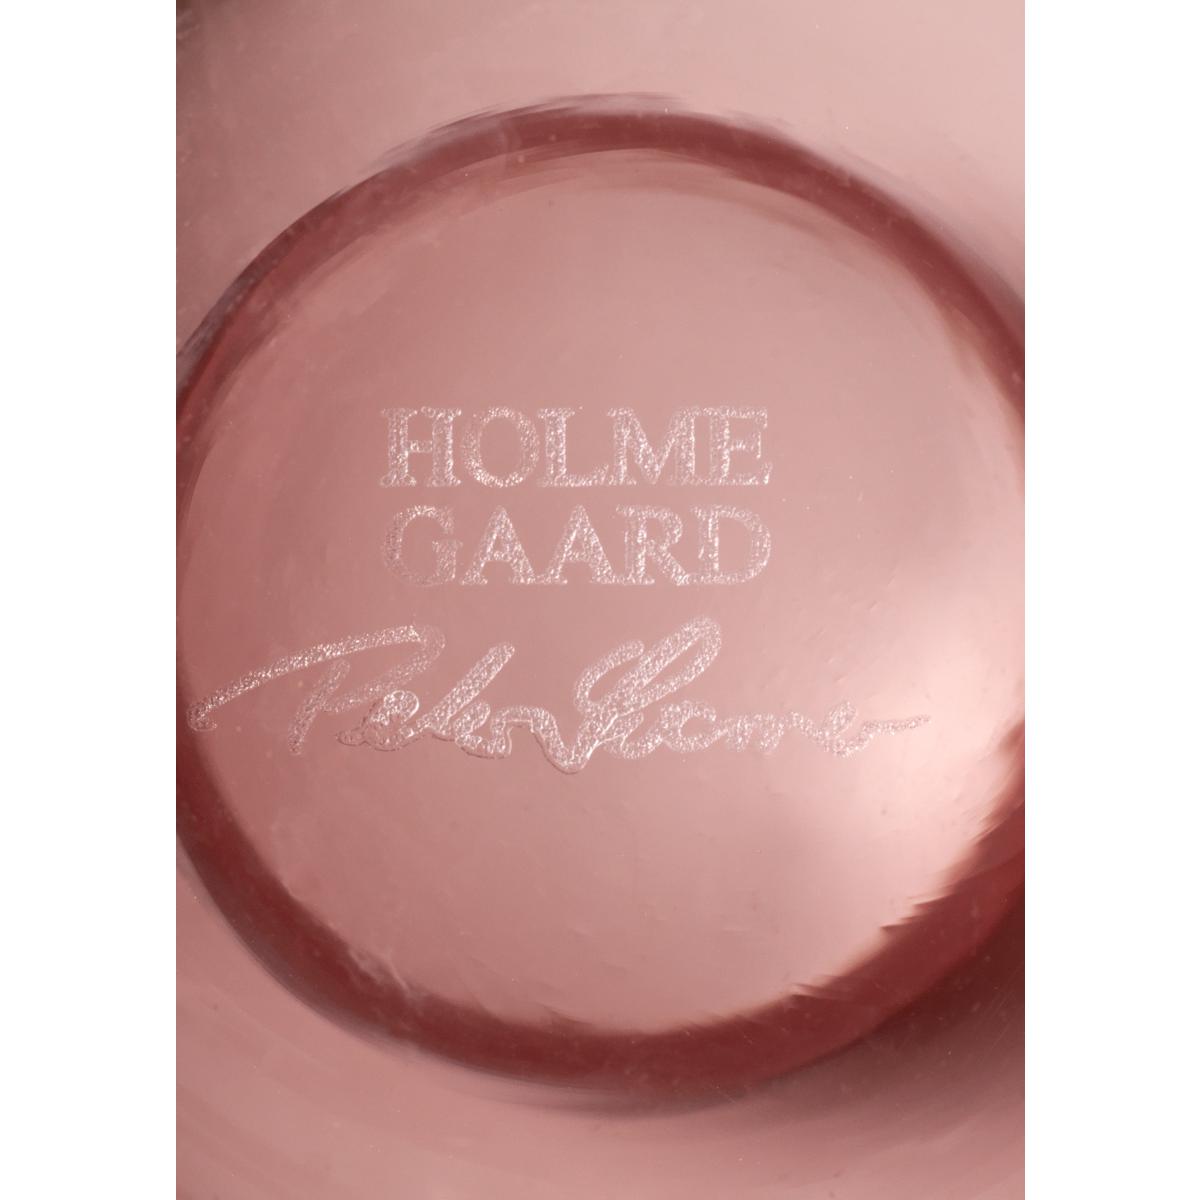 Holmegaard Calabas Vase 21 Cm, Burgund